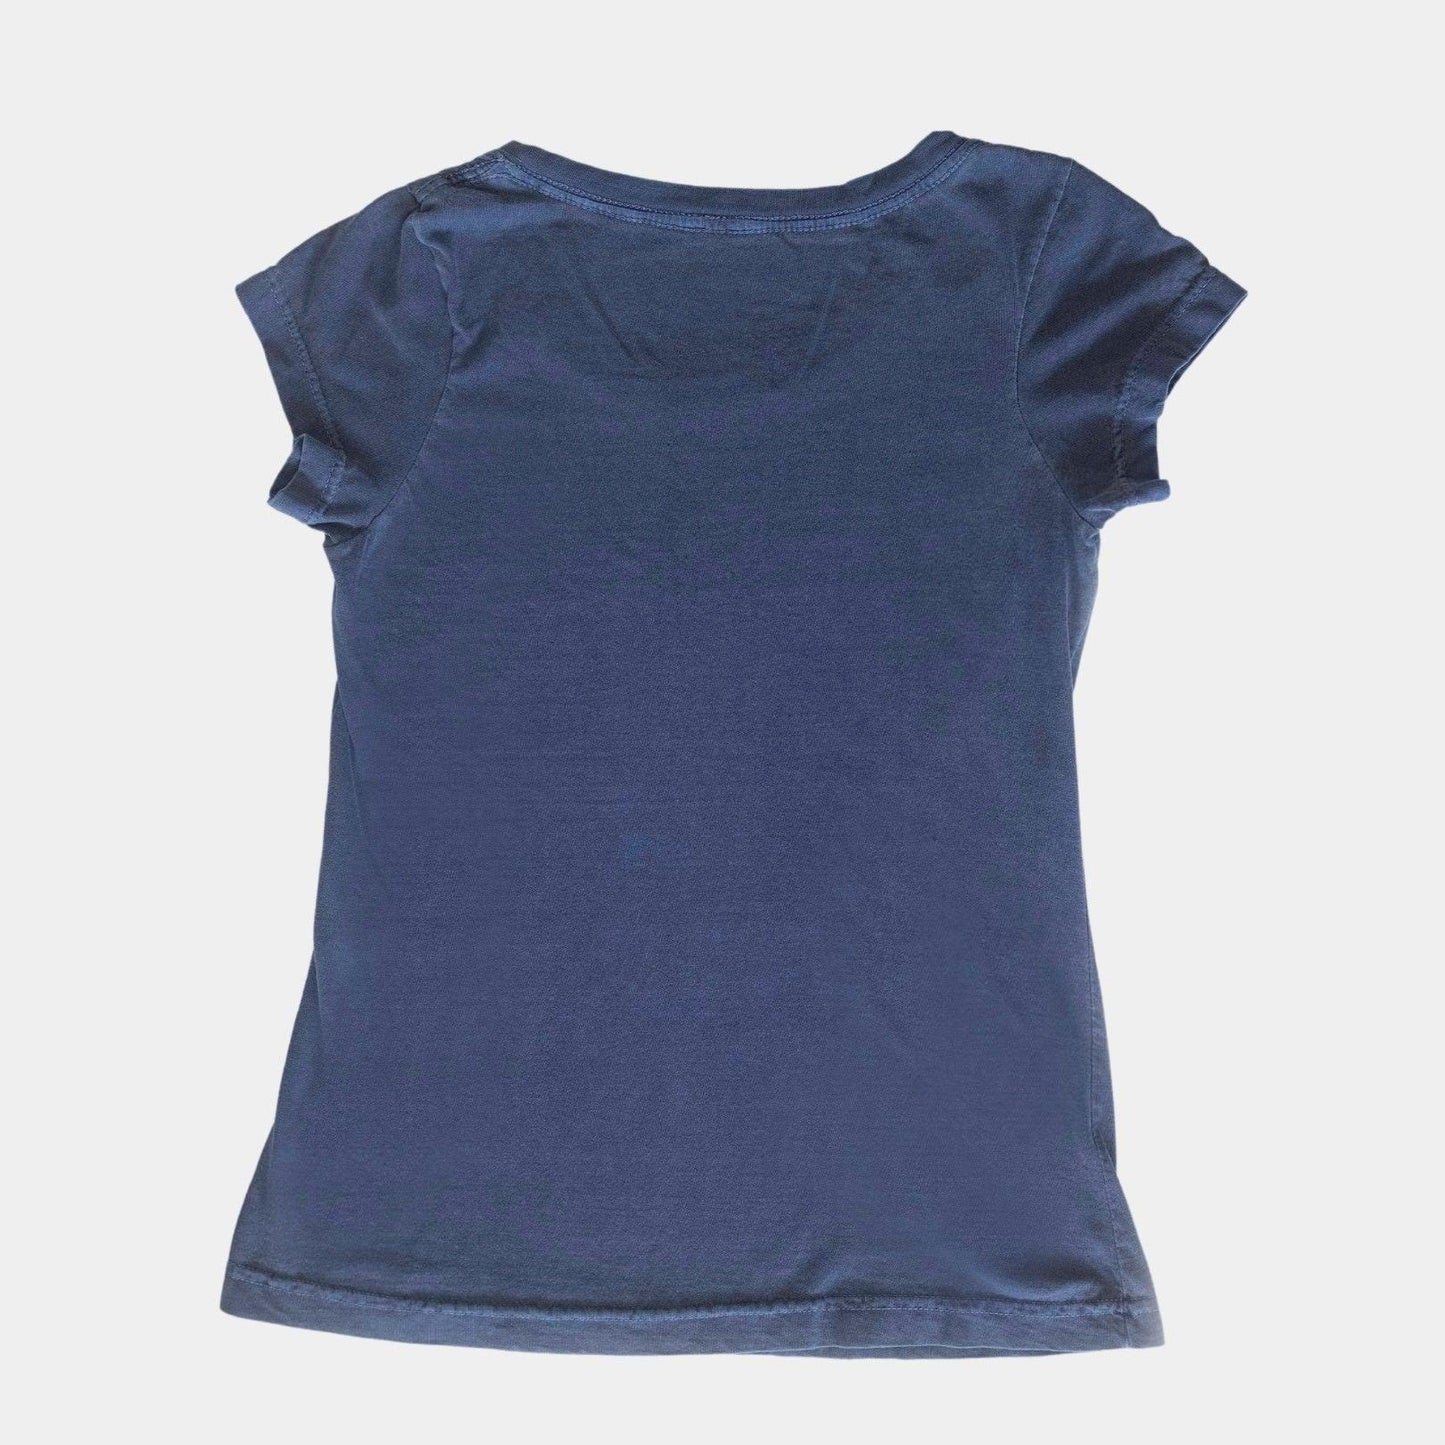 Baby Long Molécula Azul - The Bud Bag -  Camiseta